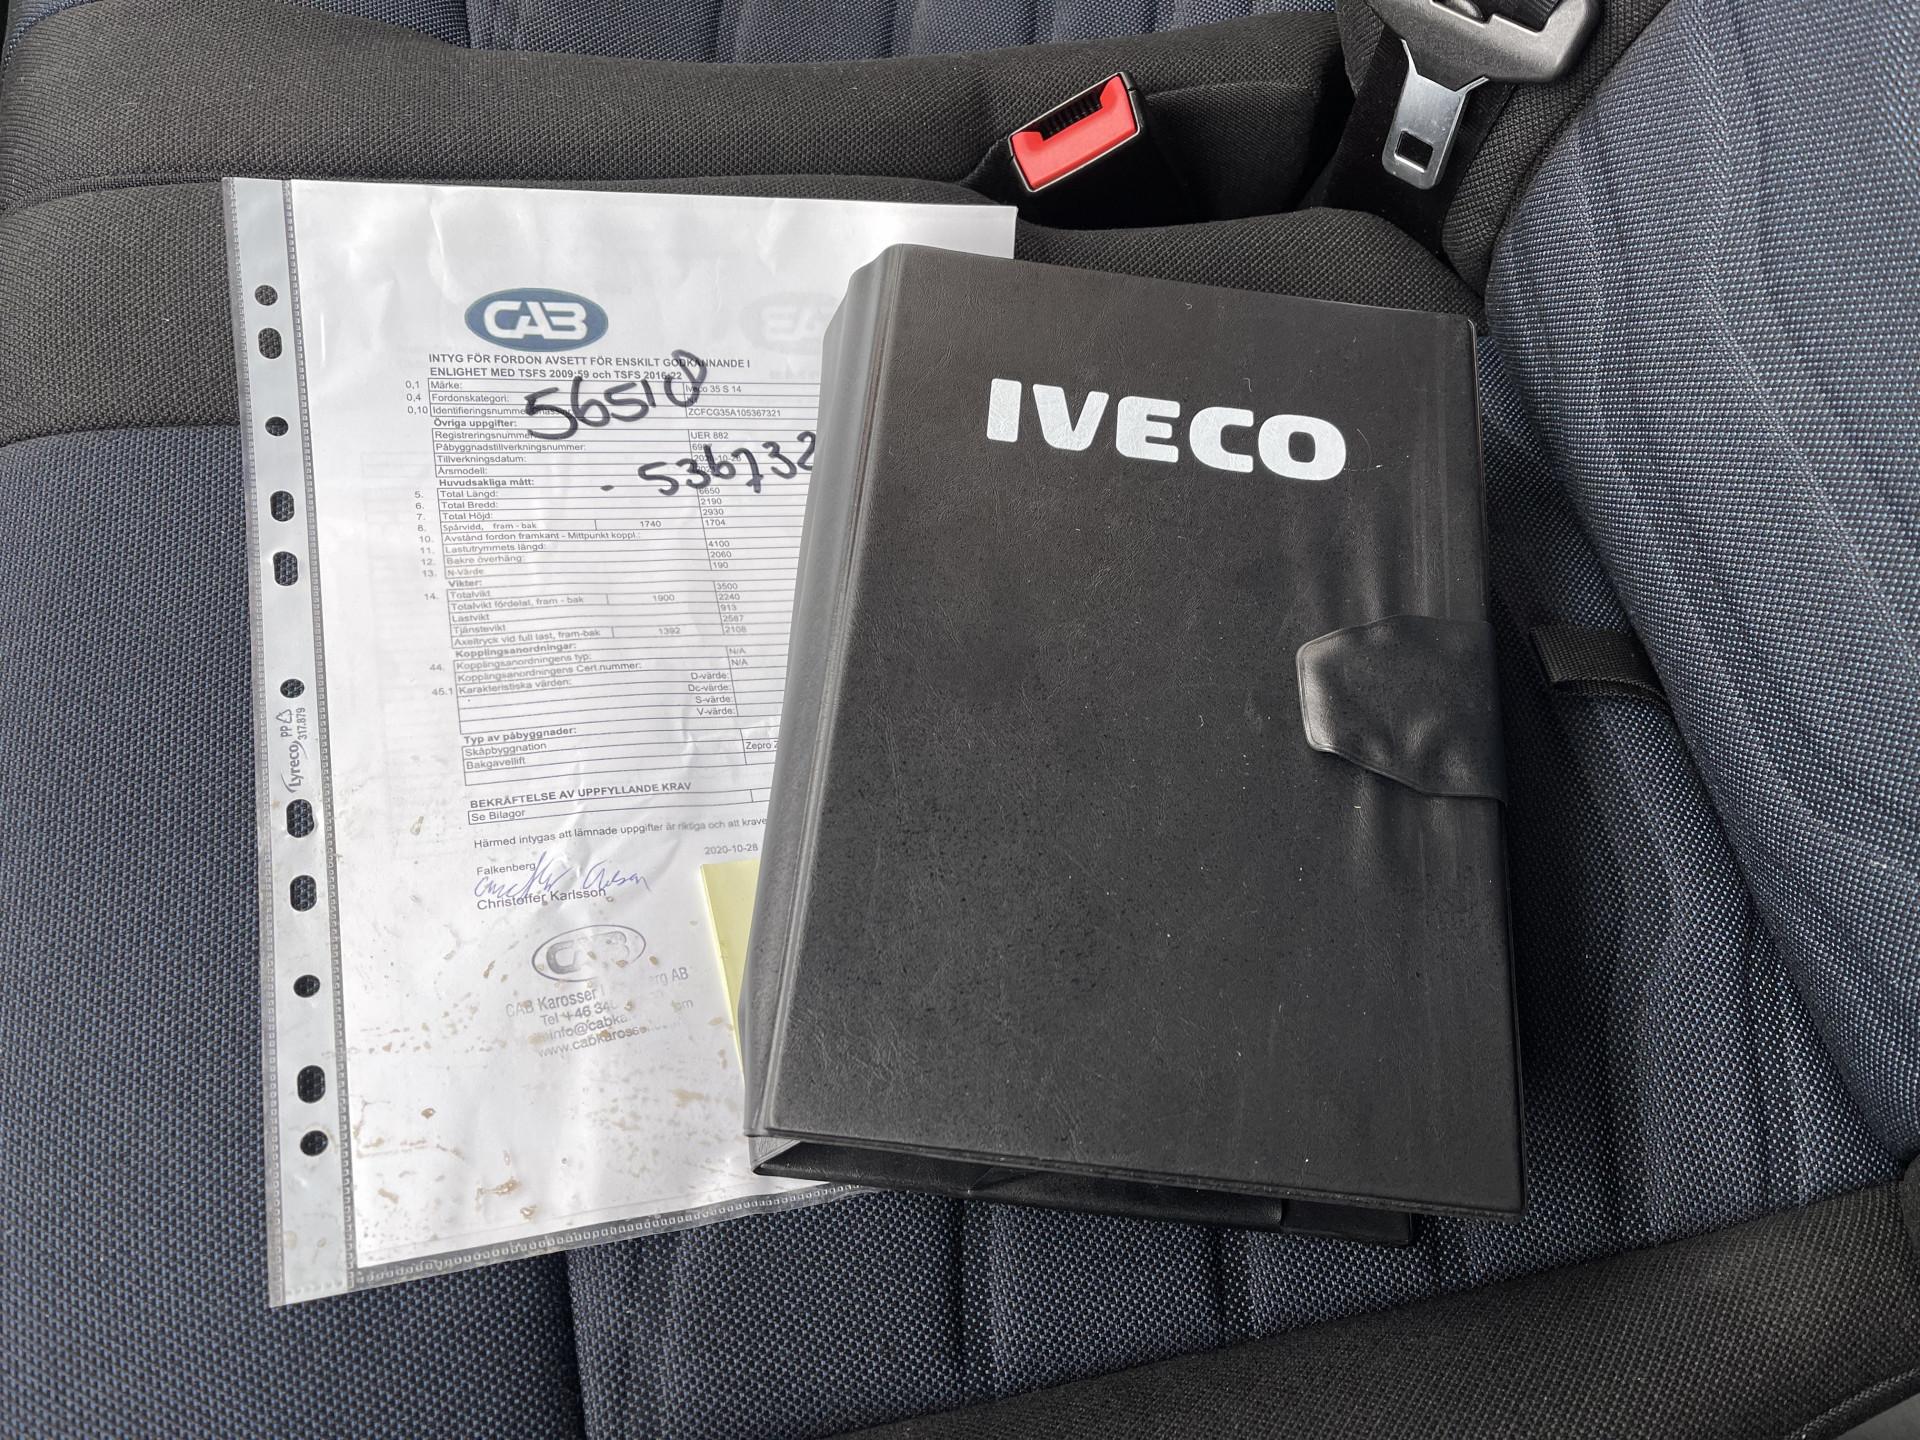 Foto 33 van Iveco Daily 35S14 Himatic automaat / bakwagen met laadklep / vaste prijs rijklaar € 30.950 ex btw